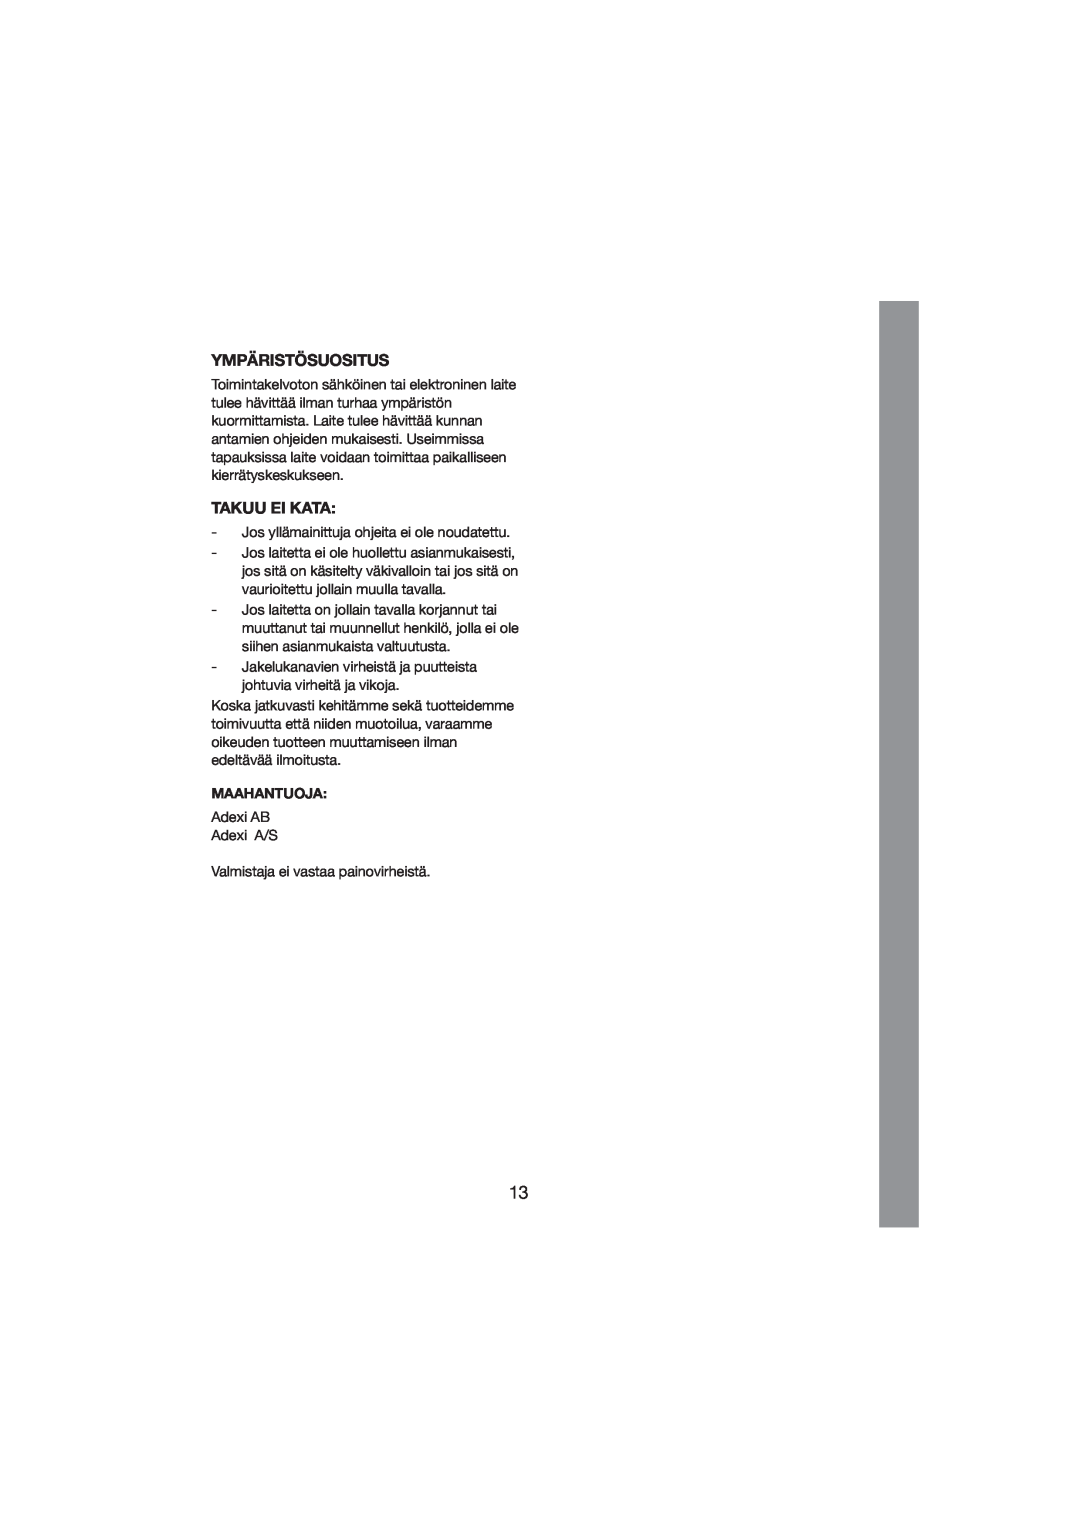 Melissa 243-012 manual Ympäristösuositus, Takuu Ei Kata, Maahantuoja 